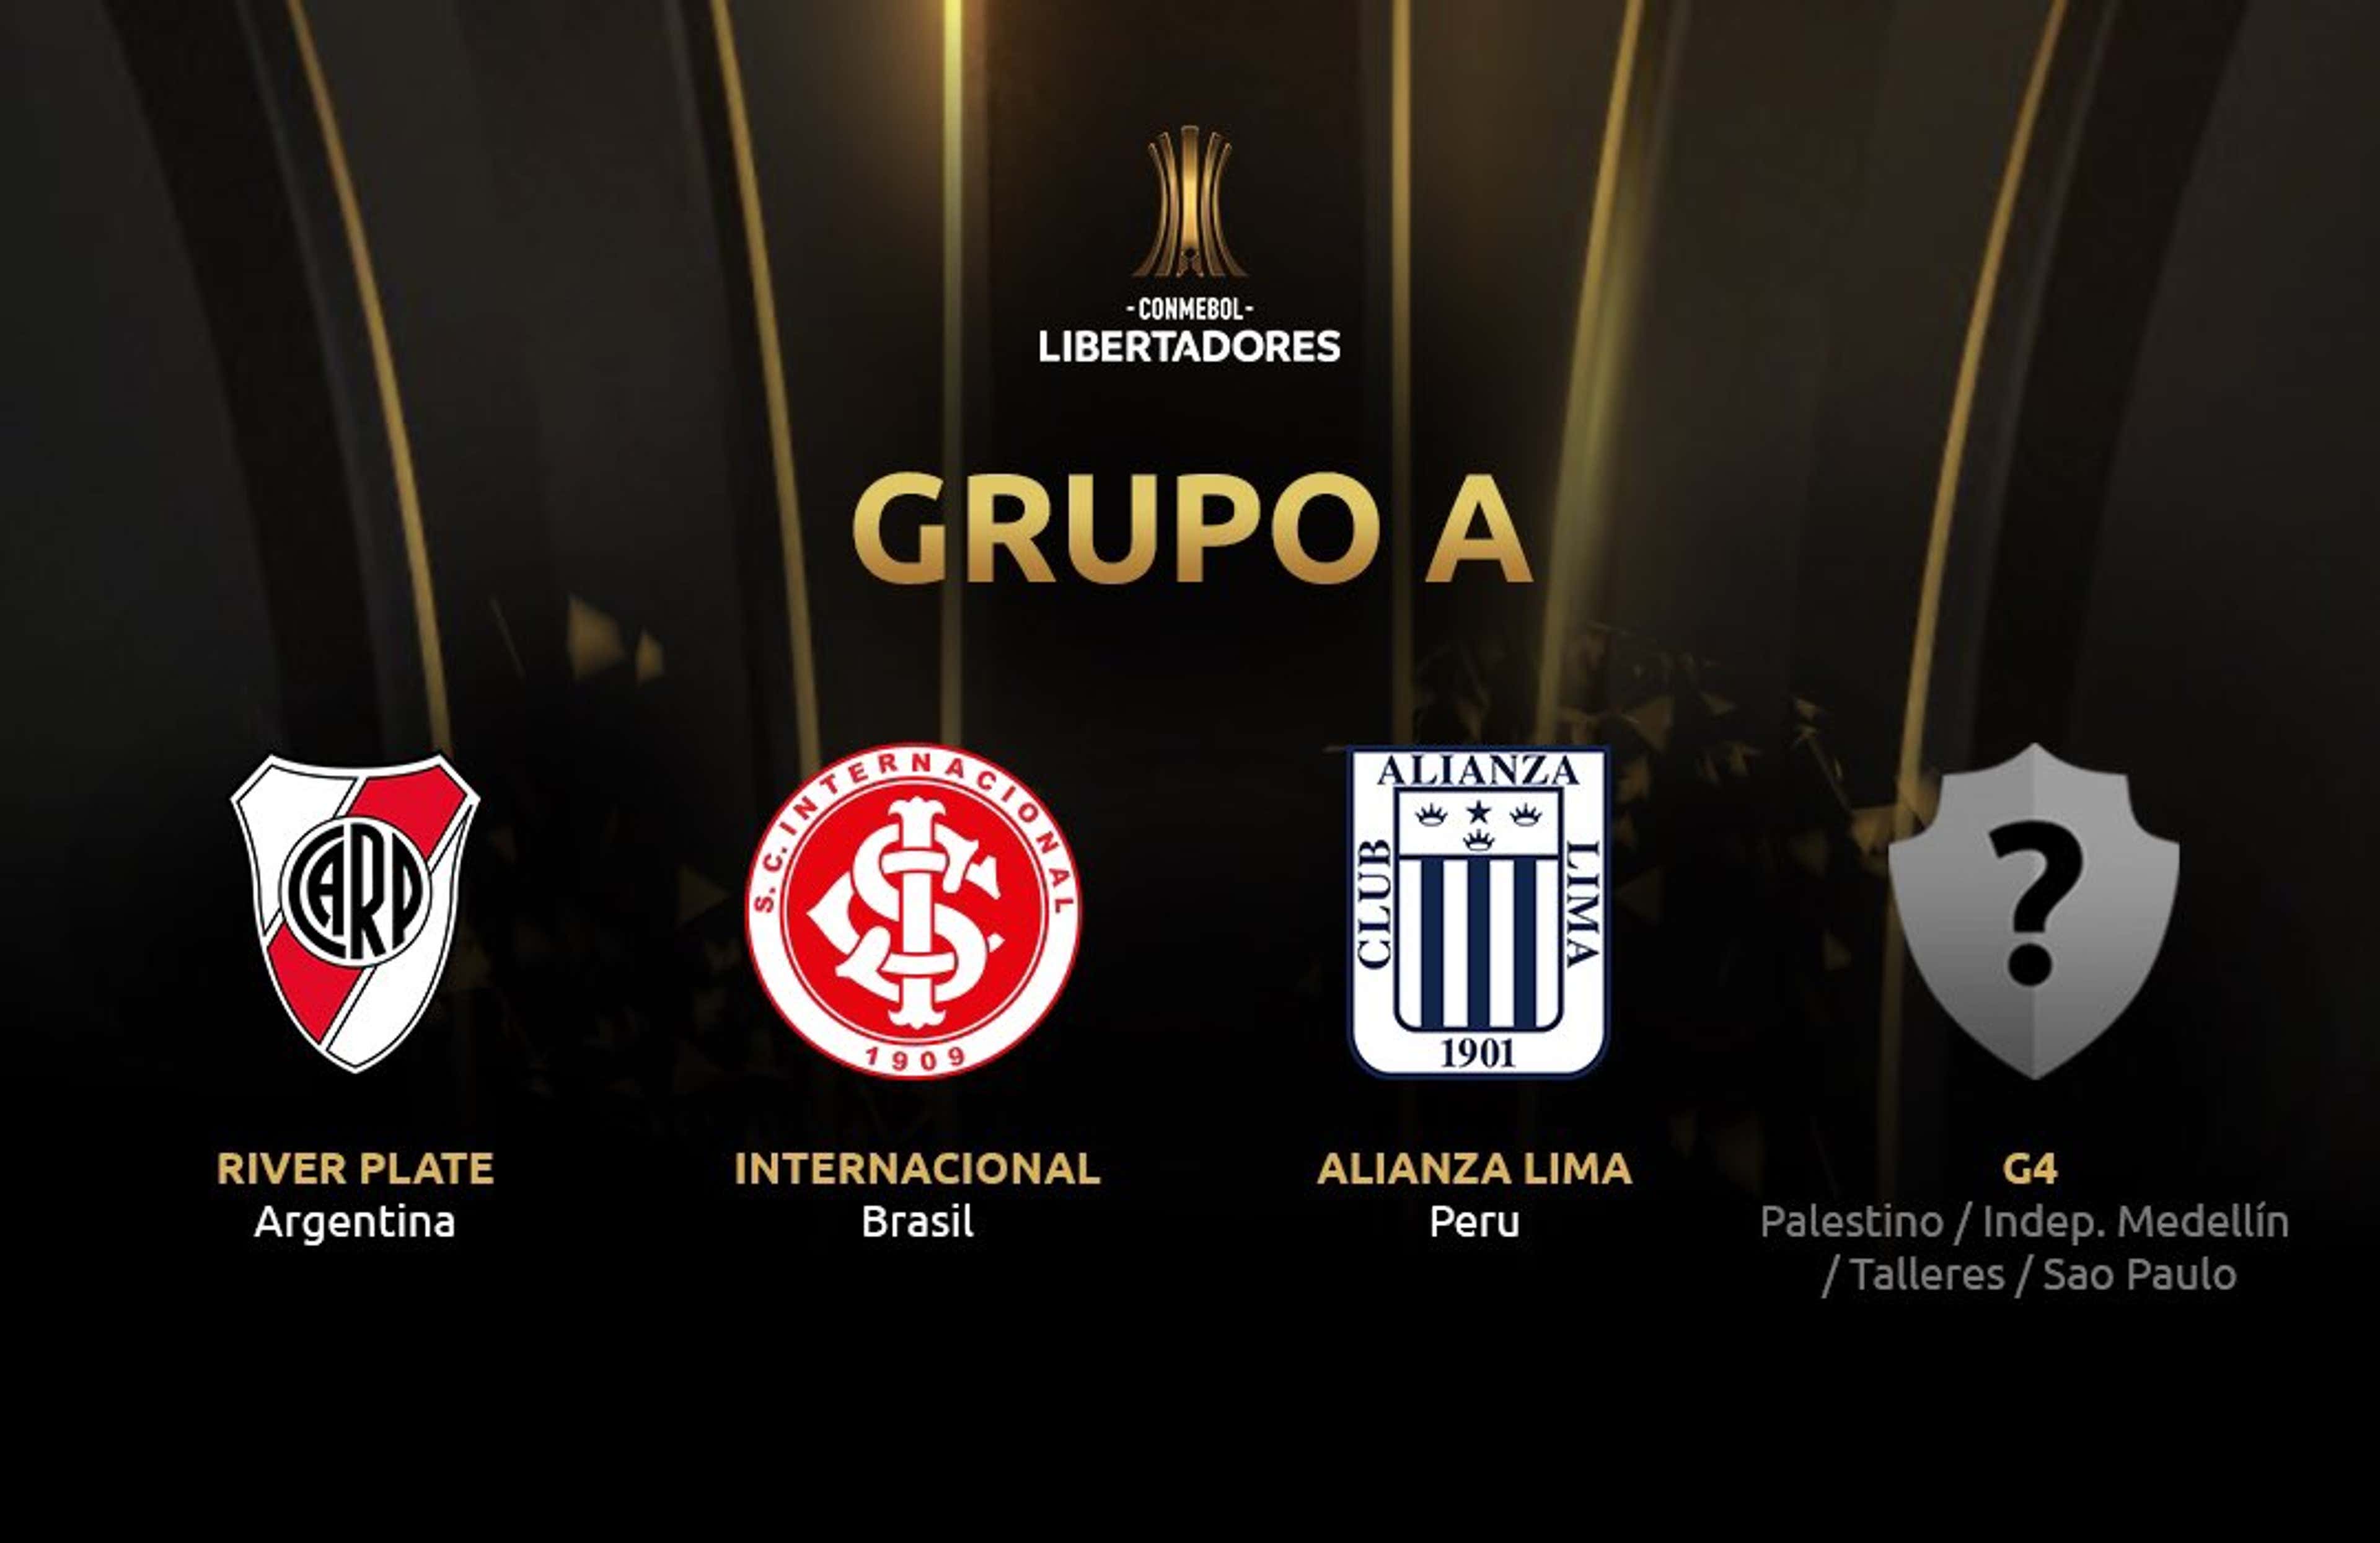 Grupo A - Libertadores 2019